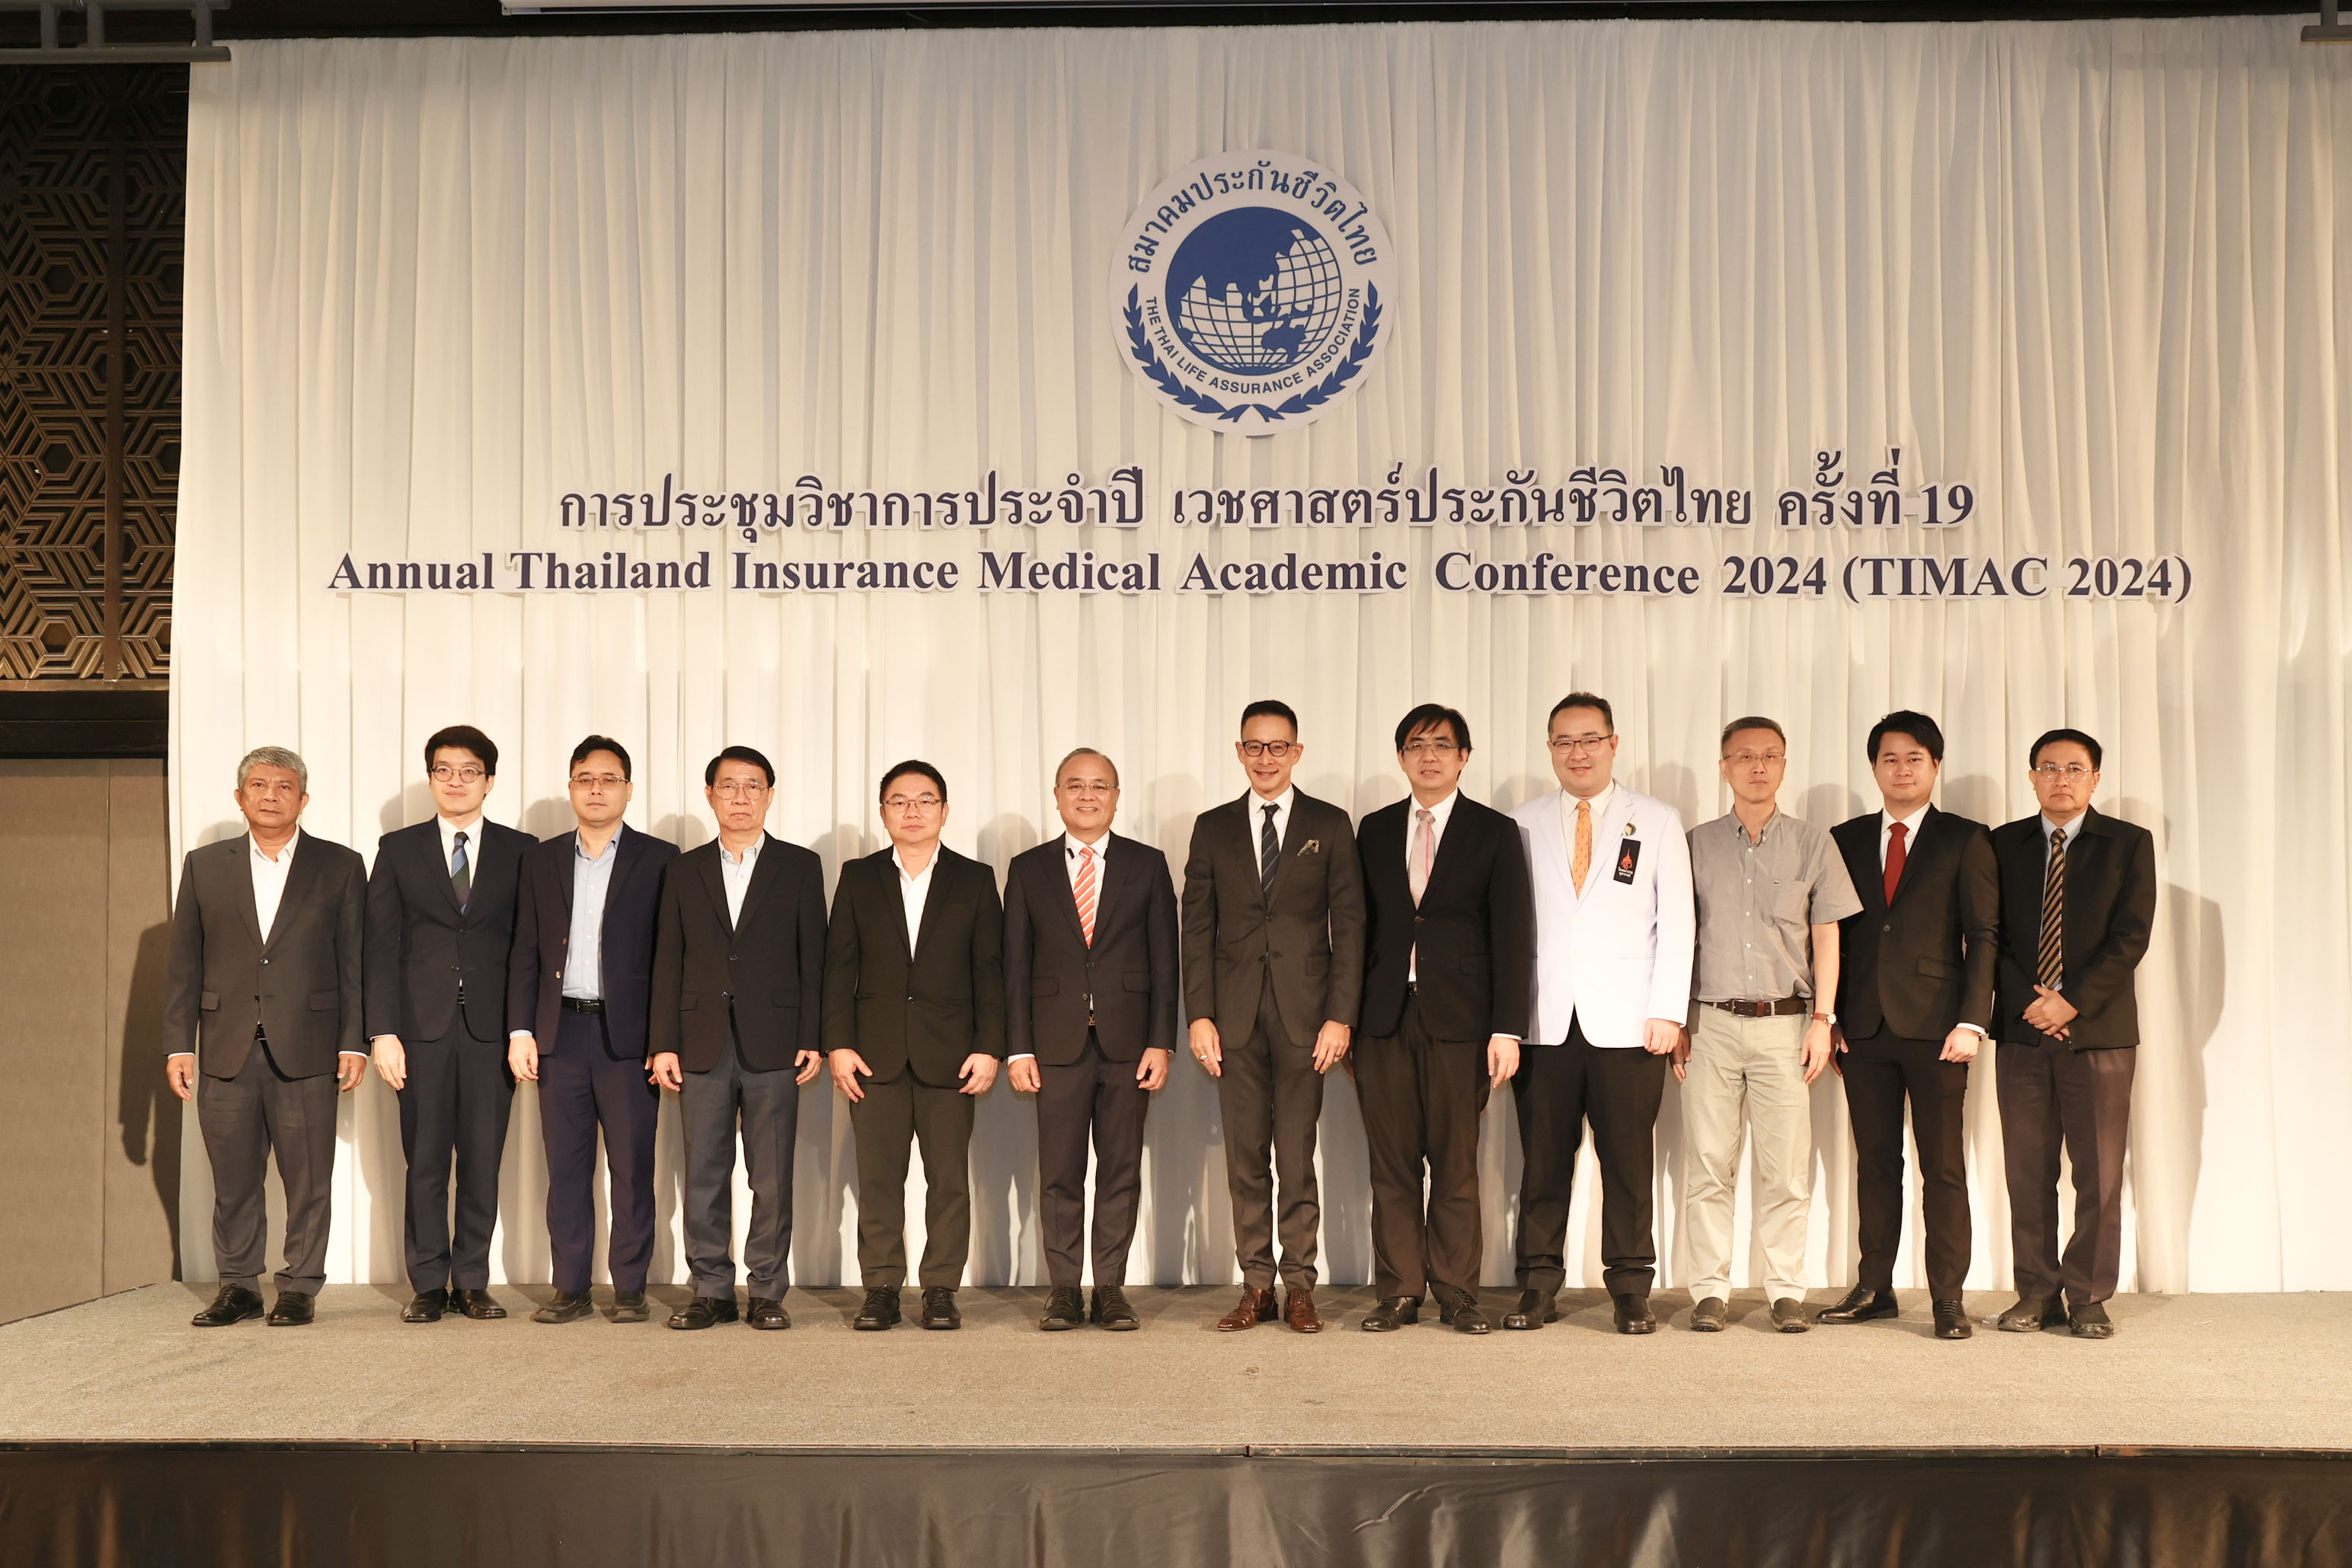 สมาคมประกันชีวิตไทยจัดการประชุมวิชาการประจำปี เวชศาสตร์ประกันชีวิตไทย ครั้งที่ 19